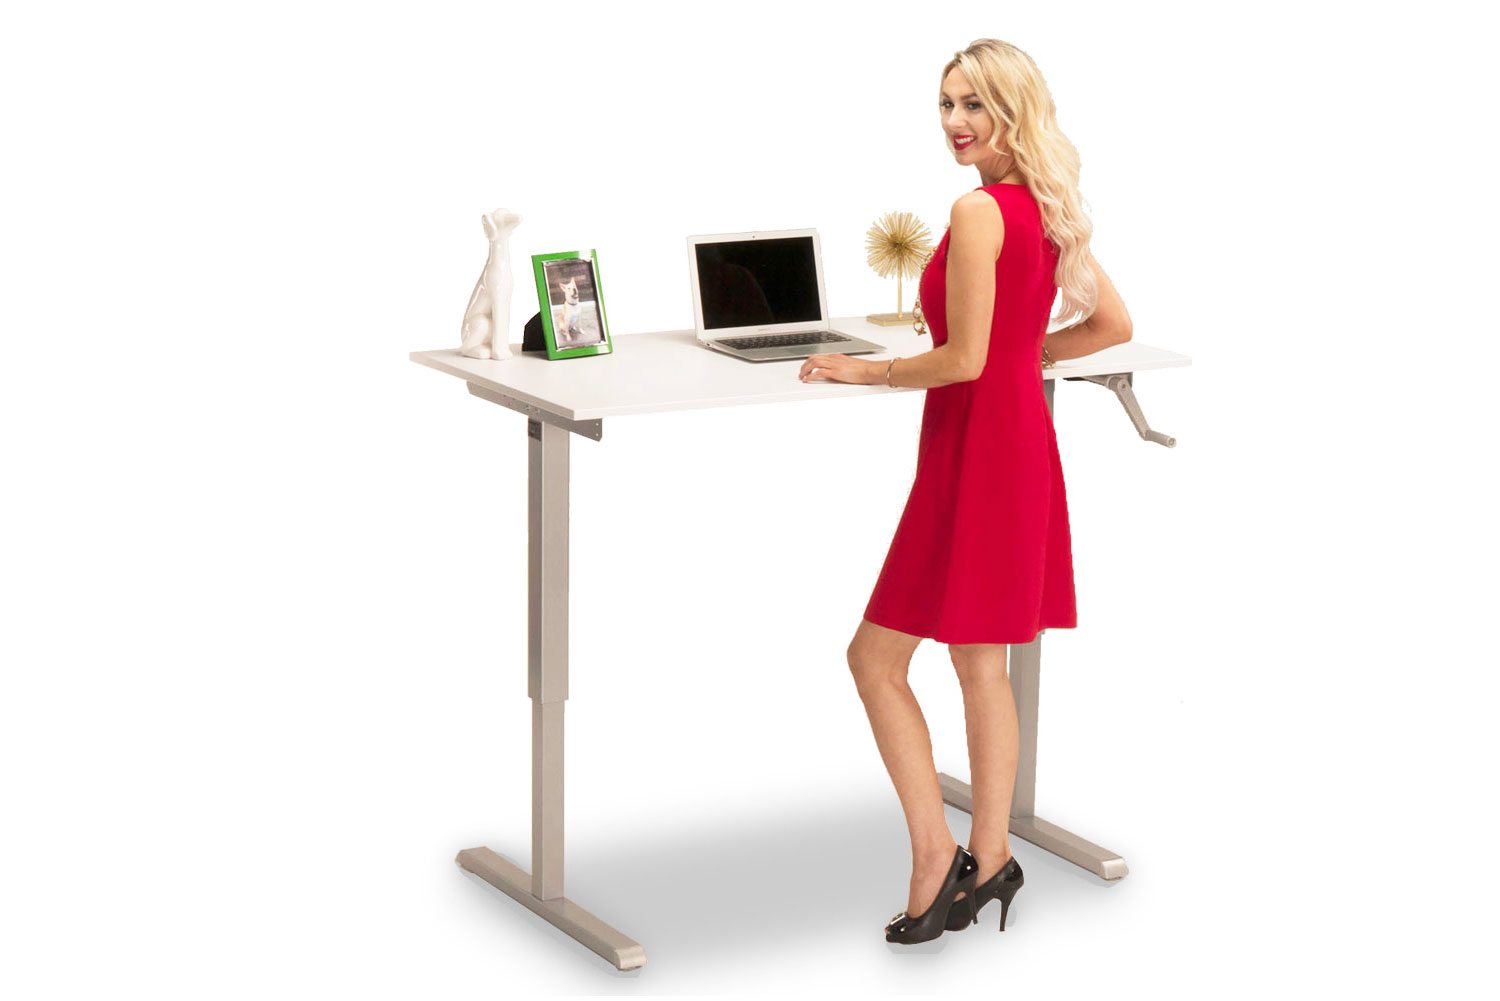 The MultiTable Standing Desk Converter